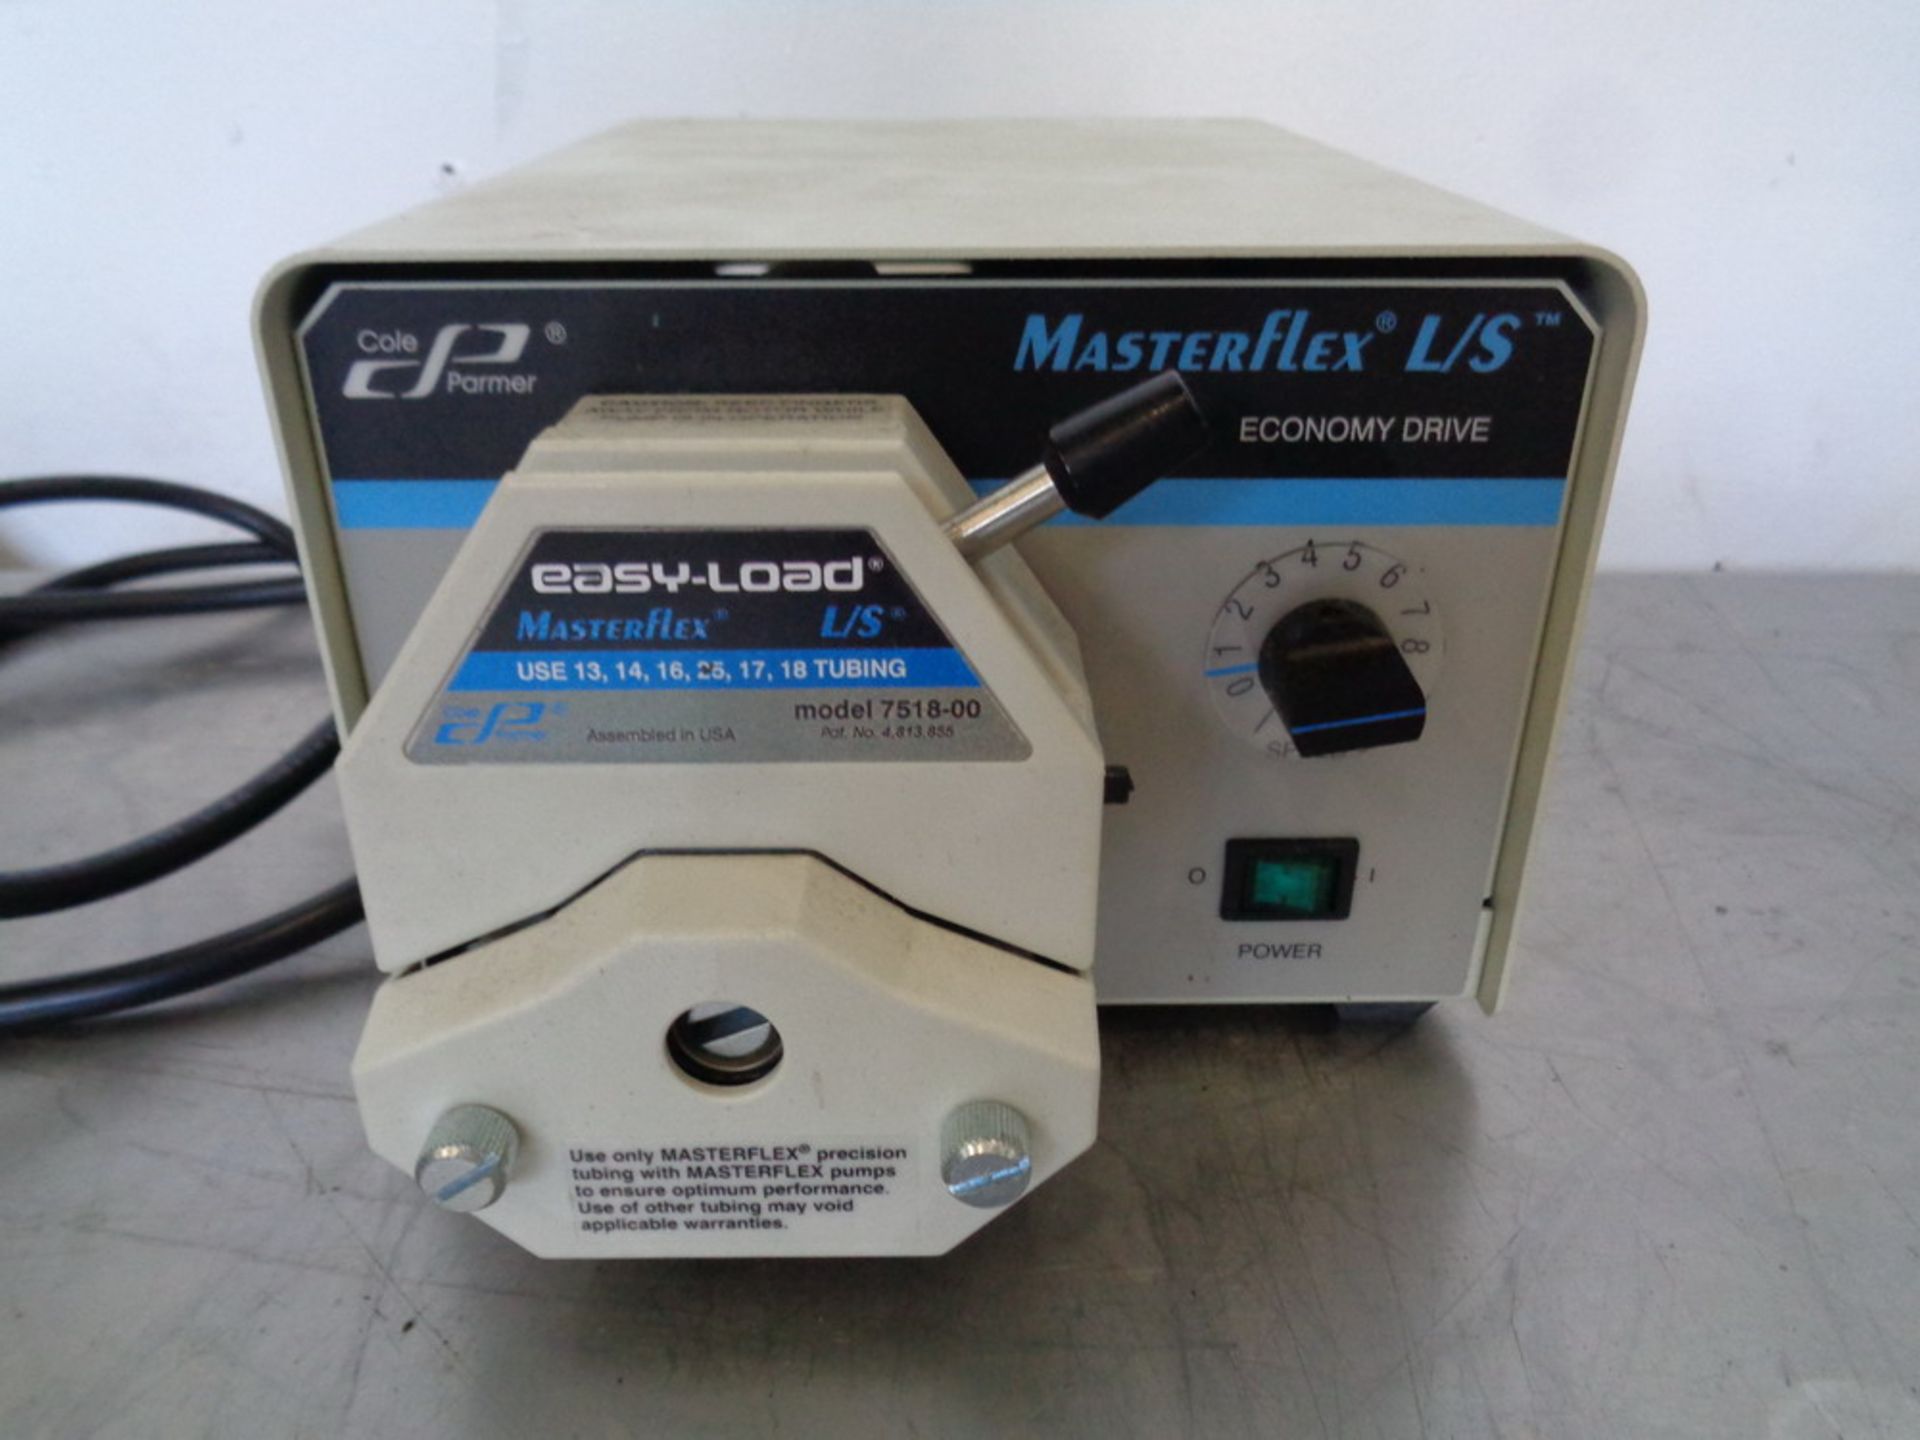 Masterflex I/P Digital Peristaltic Pump, Model Easy-Load